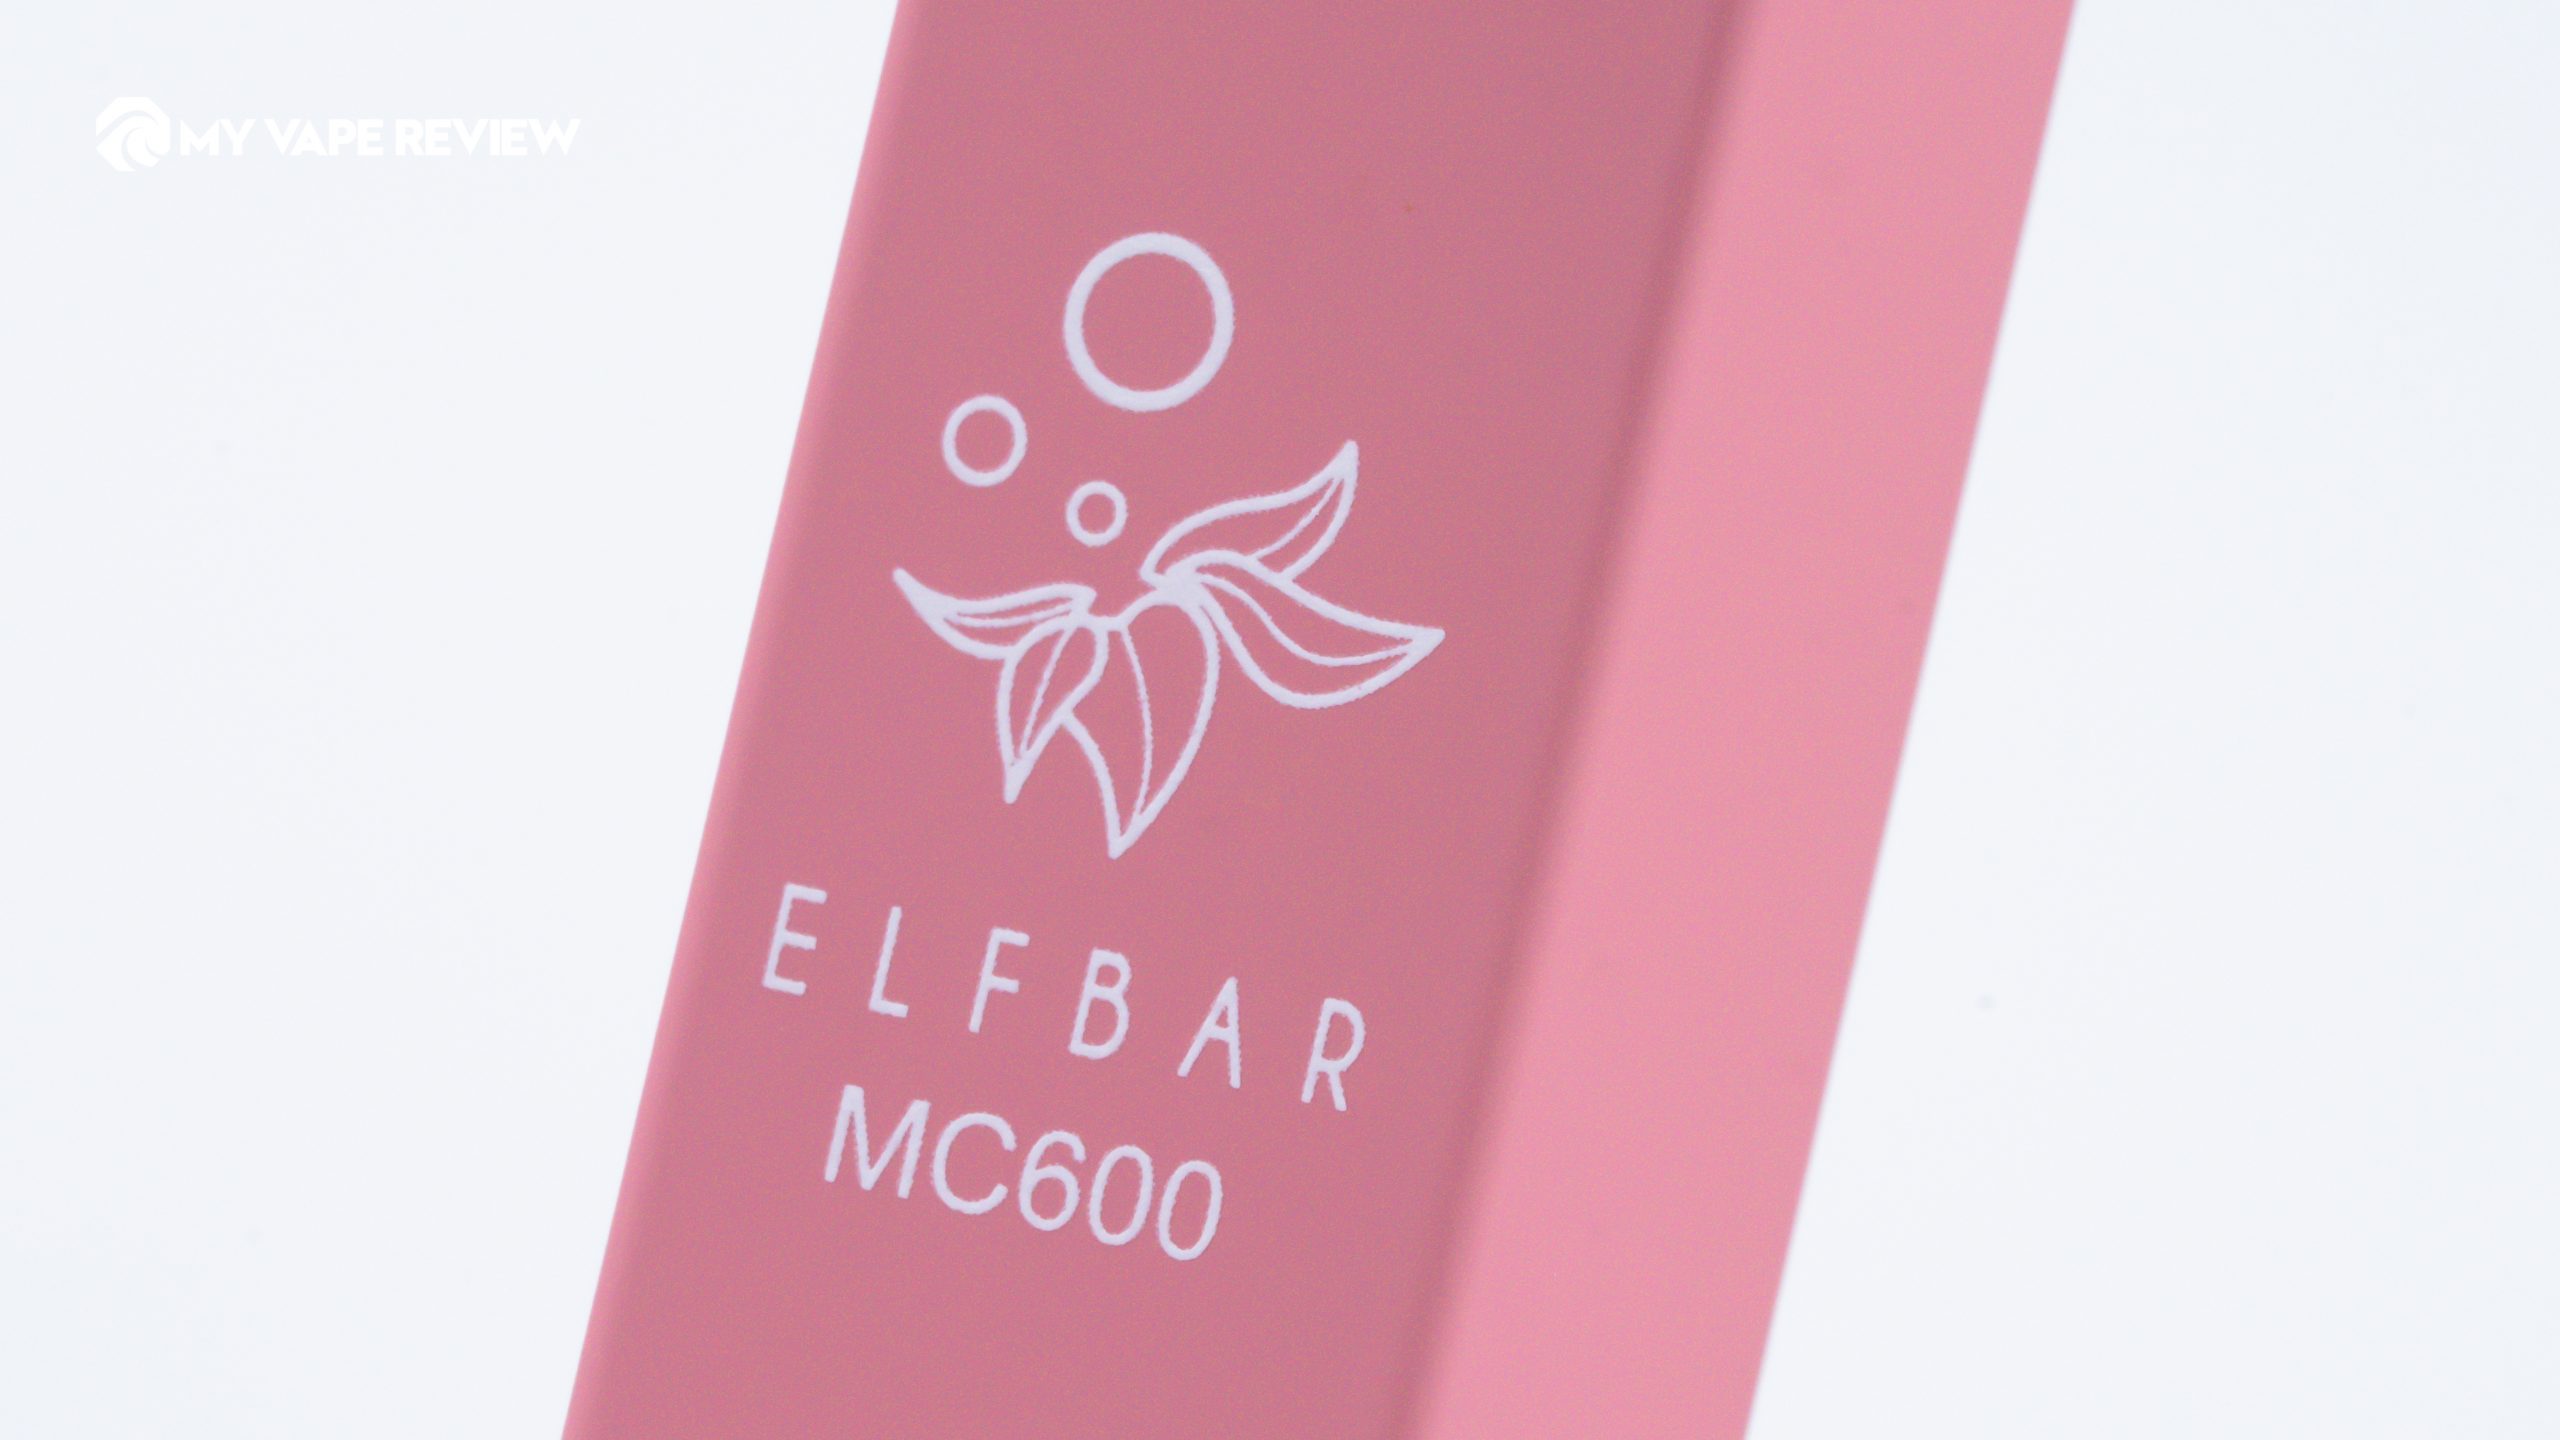 Elf Bar MC600 Shisha disposable vape